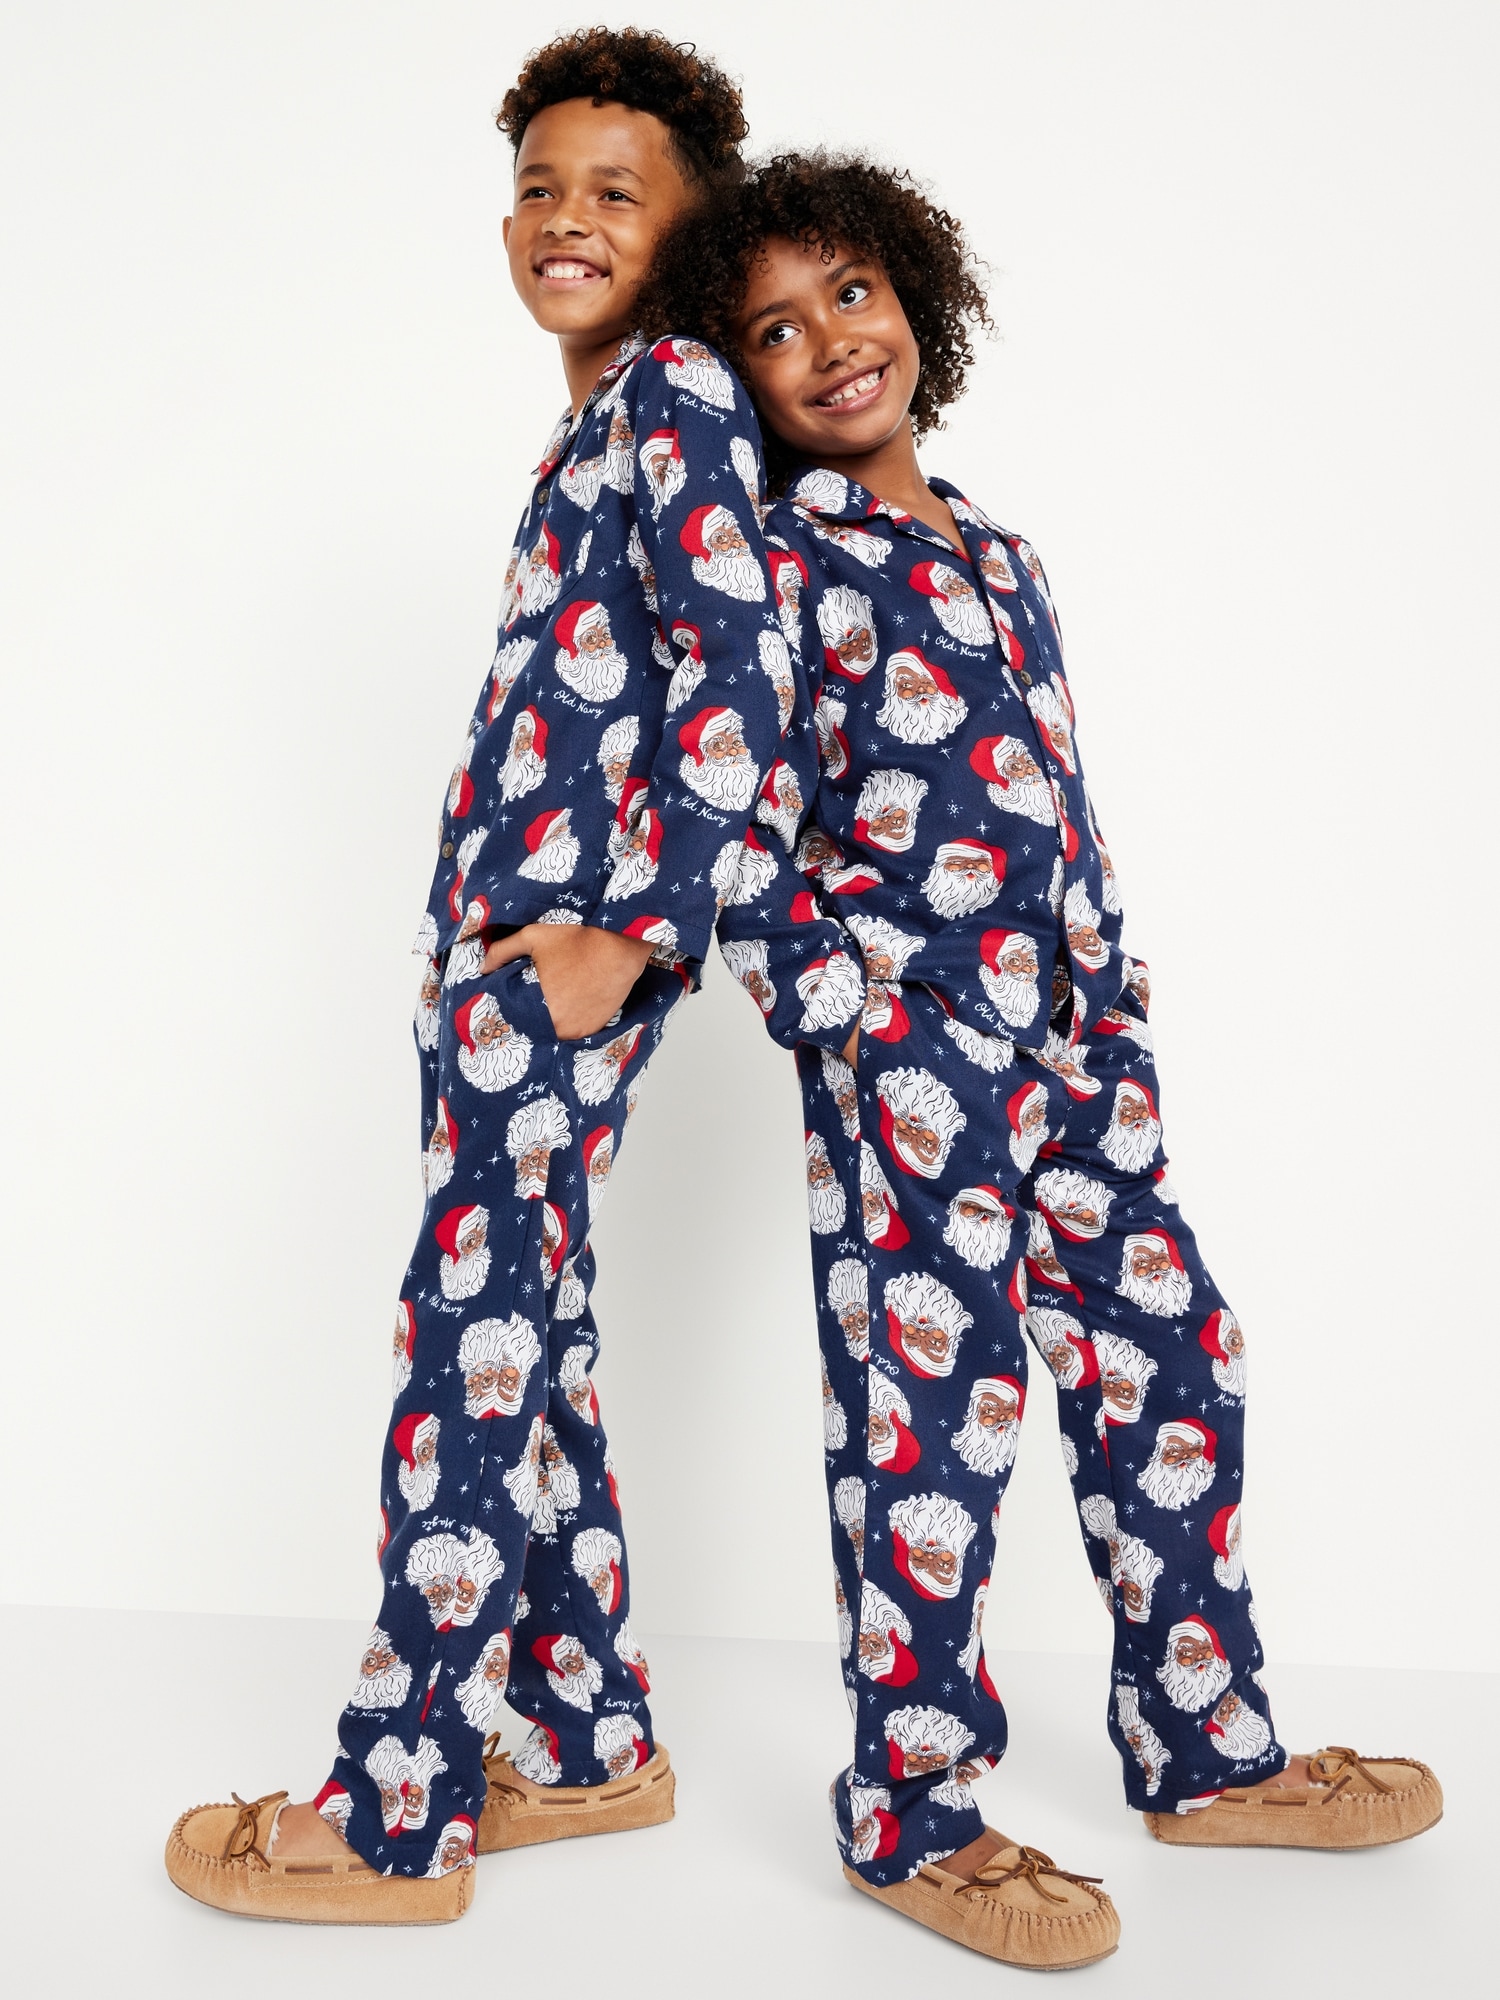 Old Navy 50% Off Pajamas for the Family (Kids Pajamas $7.97)